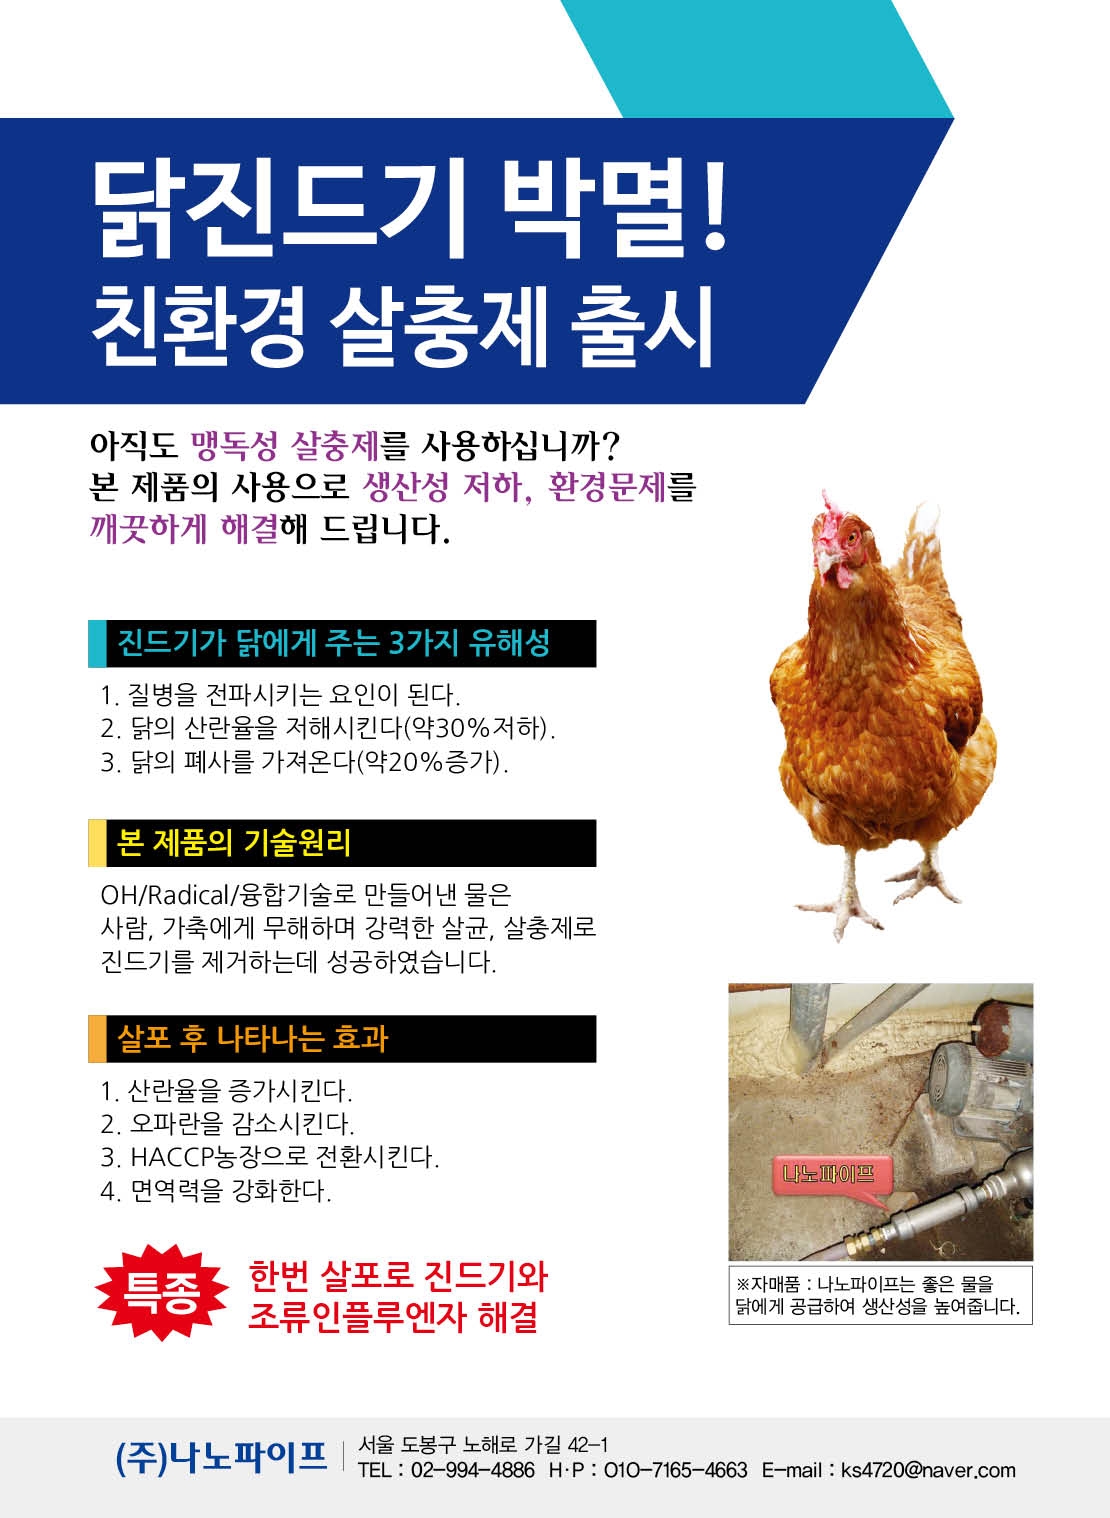 ■죽어 가는 닭을 살려주세요. 첨부 이미지